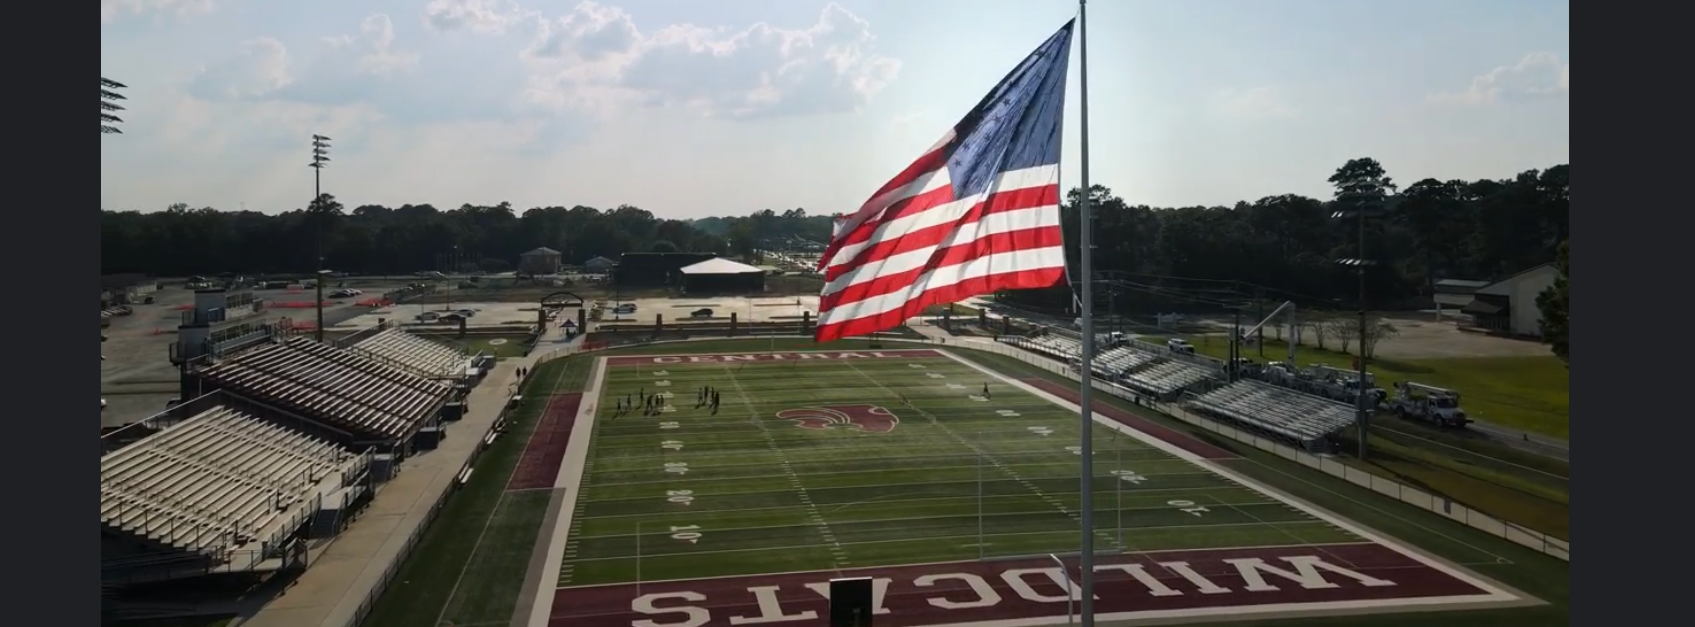 American Flag over Wildcat Stadium